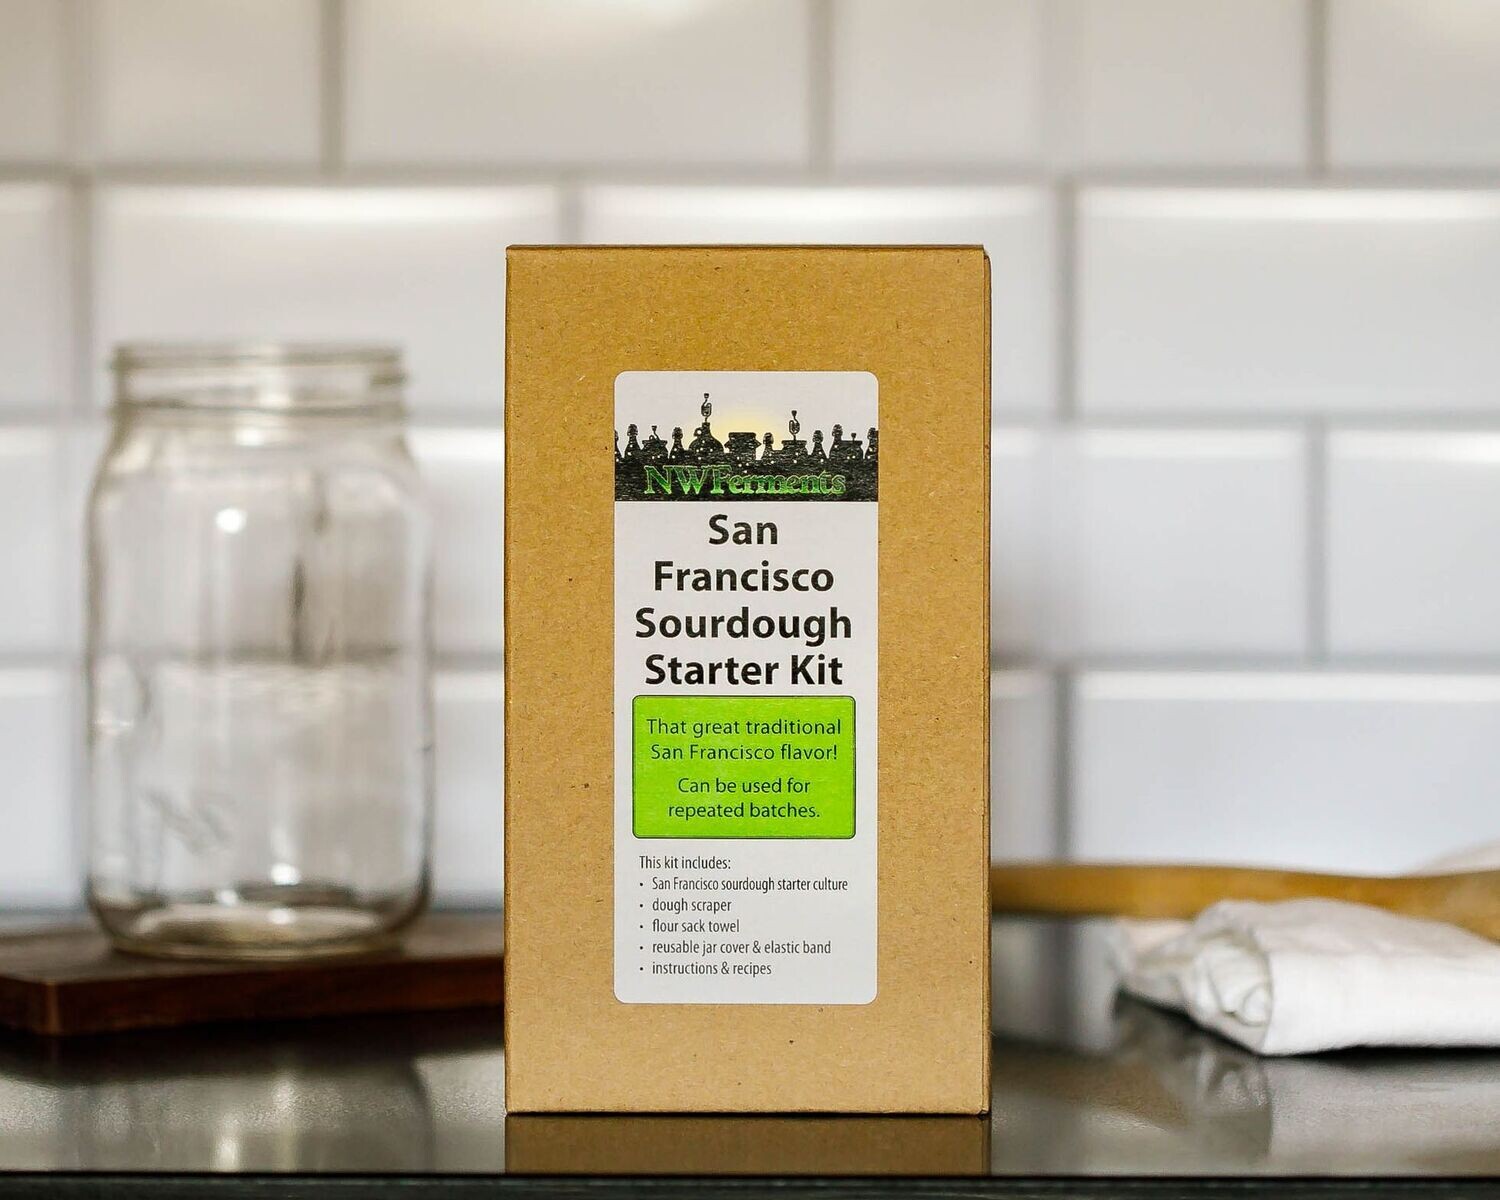 San Francisco Sourdough Starter Kit